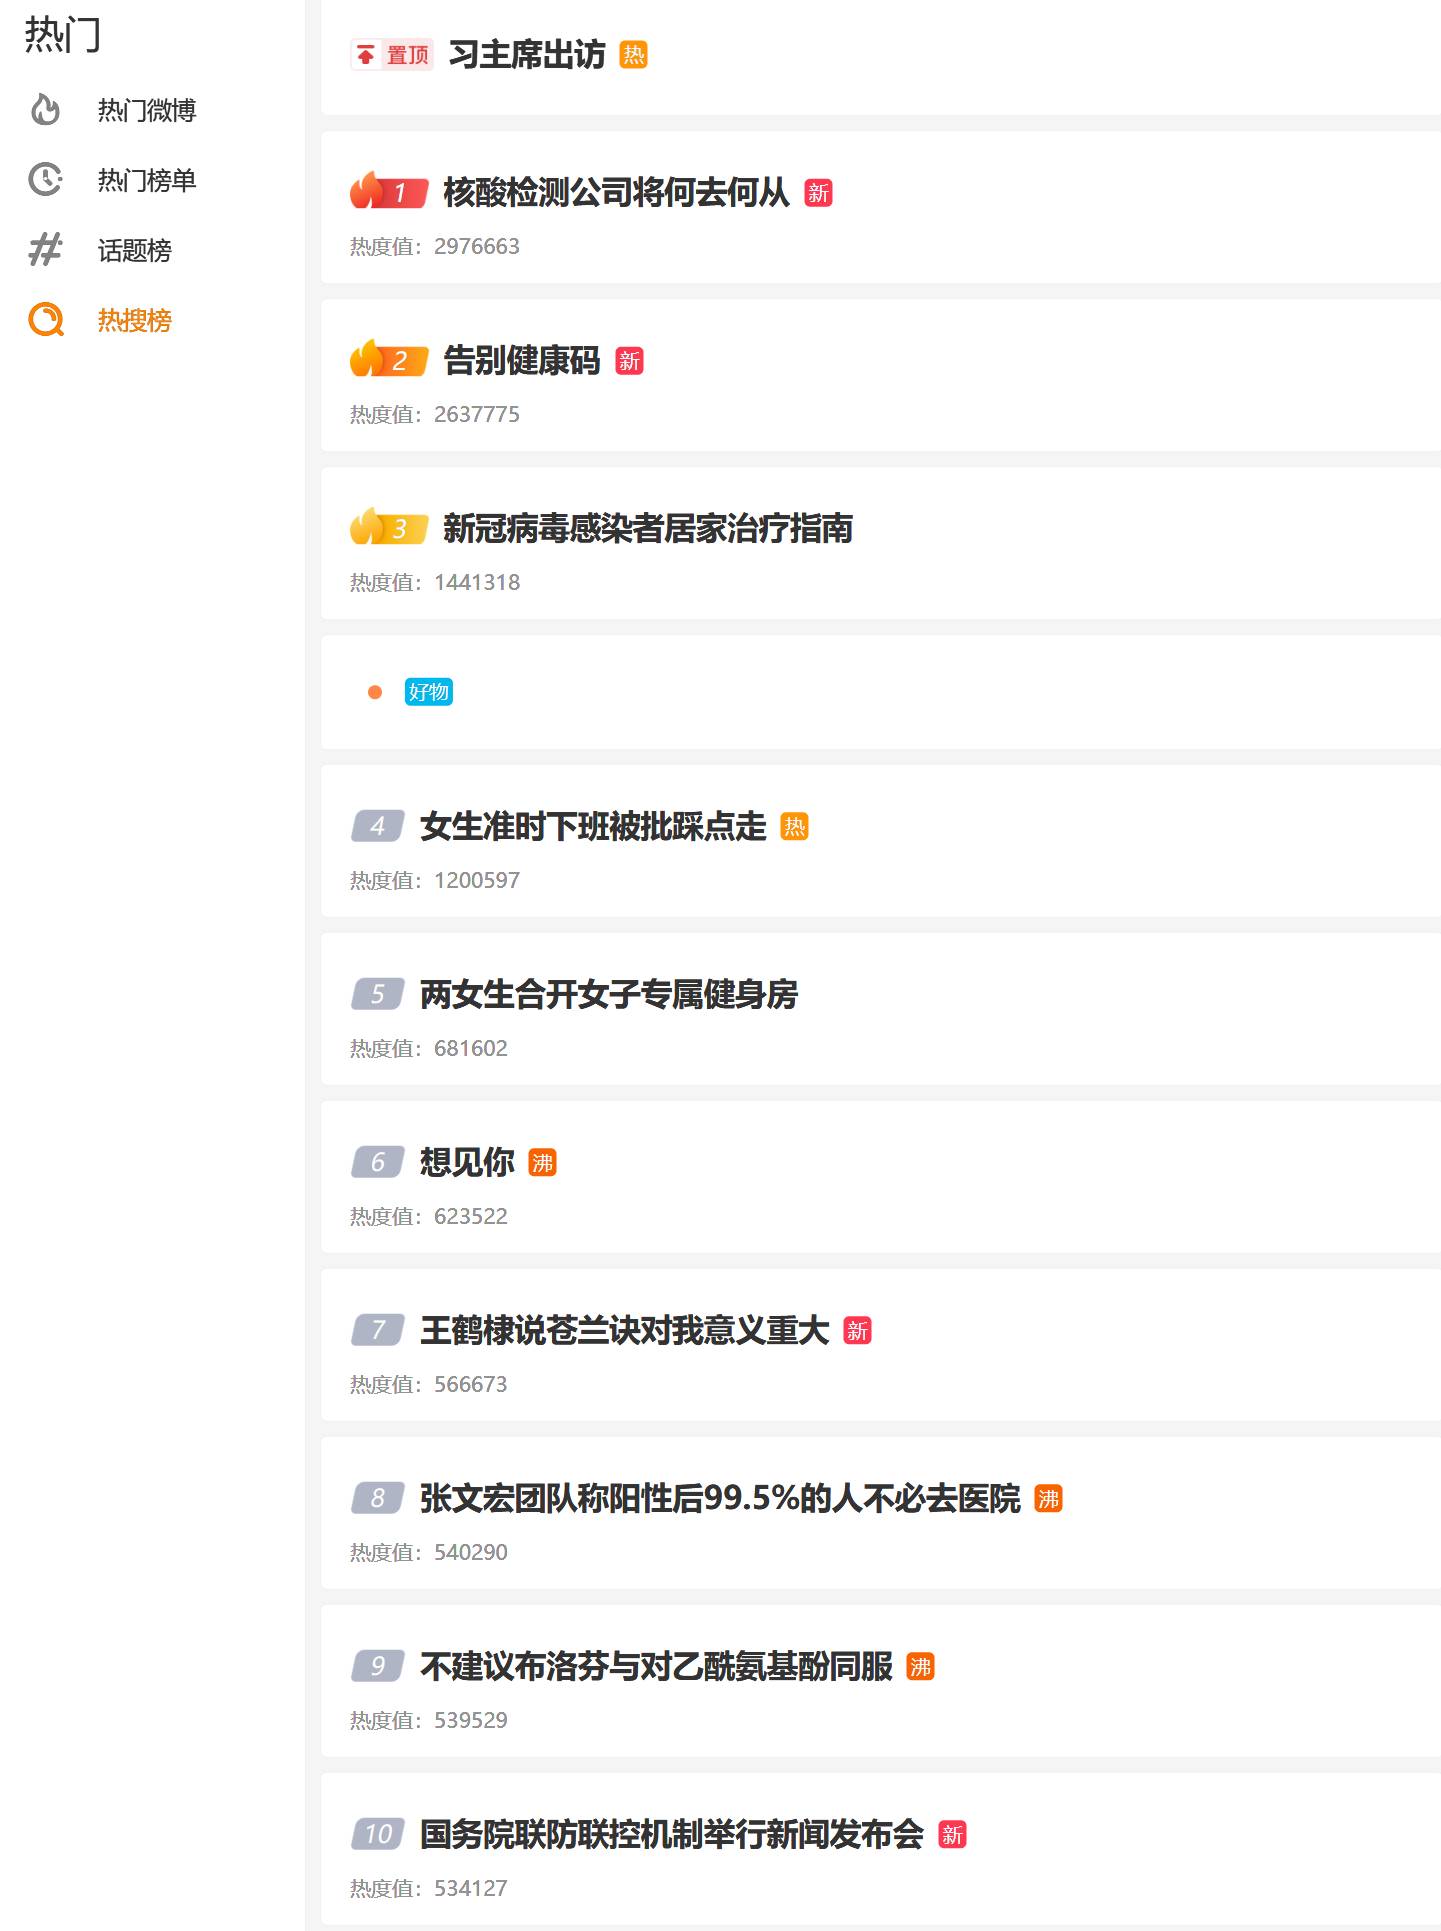 今天的 weibo 热搜很有意思啊